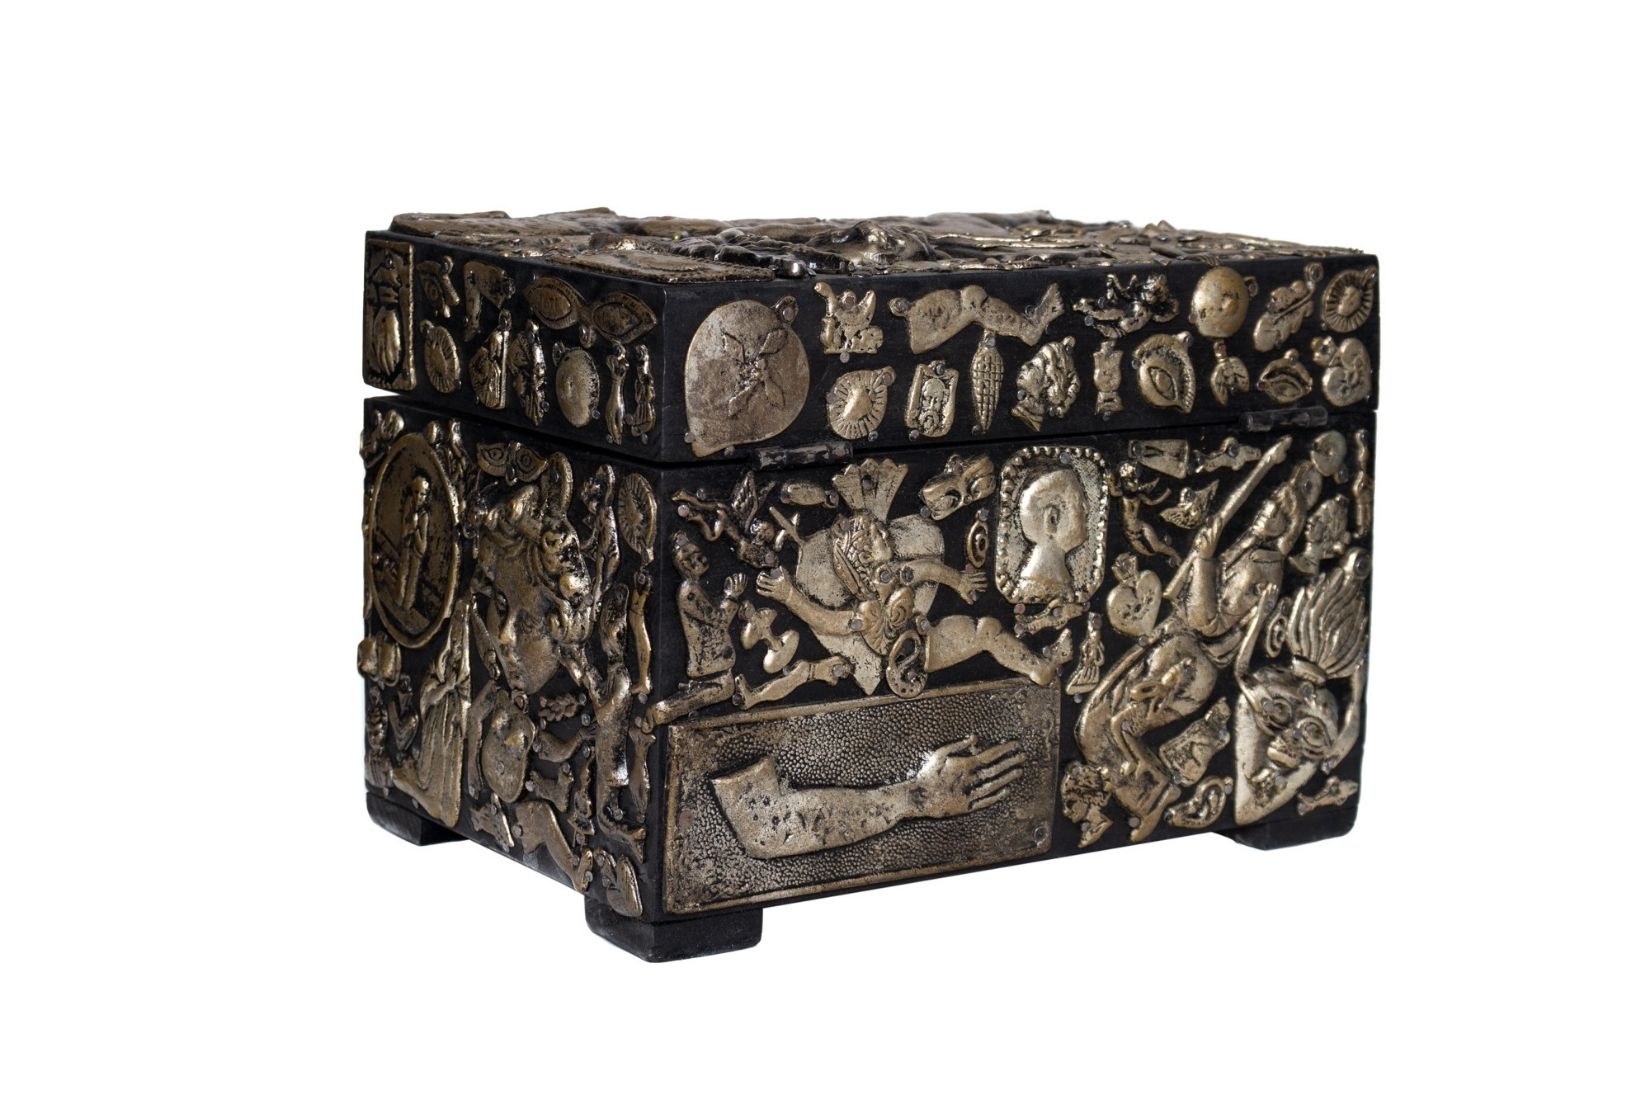 Caja de madera con milagritos de metal recortado y ensamblado. Artesana Kena Muyaes Ogazón. CDMX. Col. MAP. (Foto: EKV).